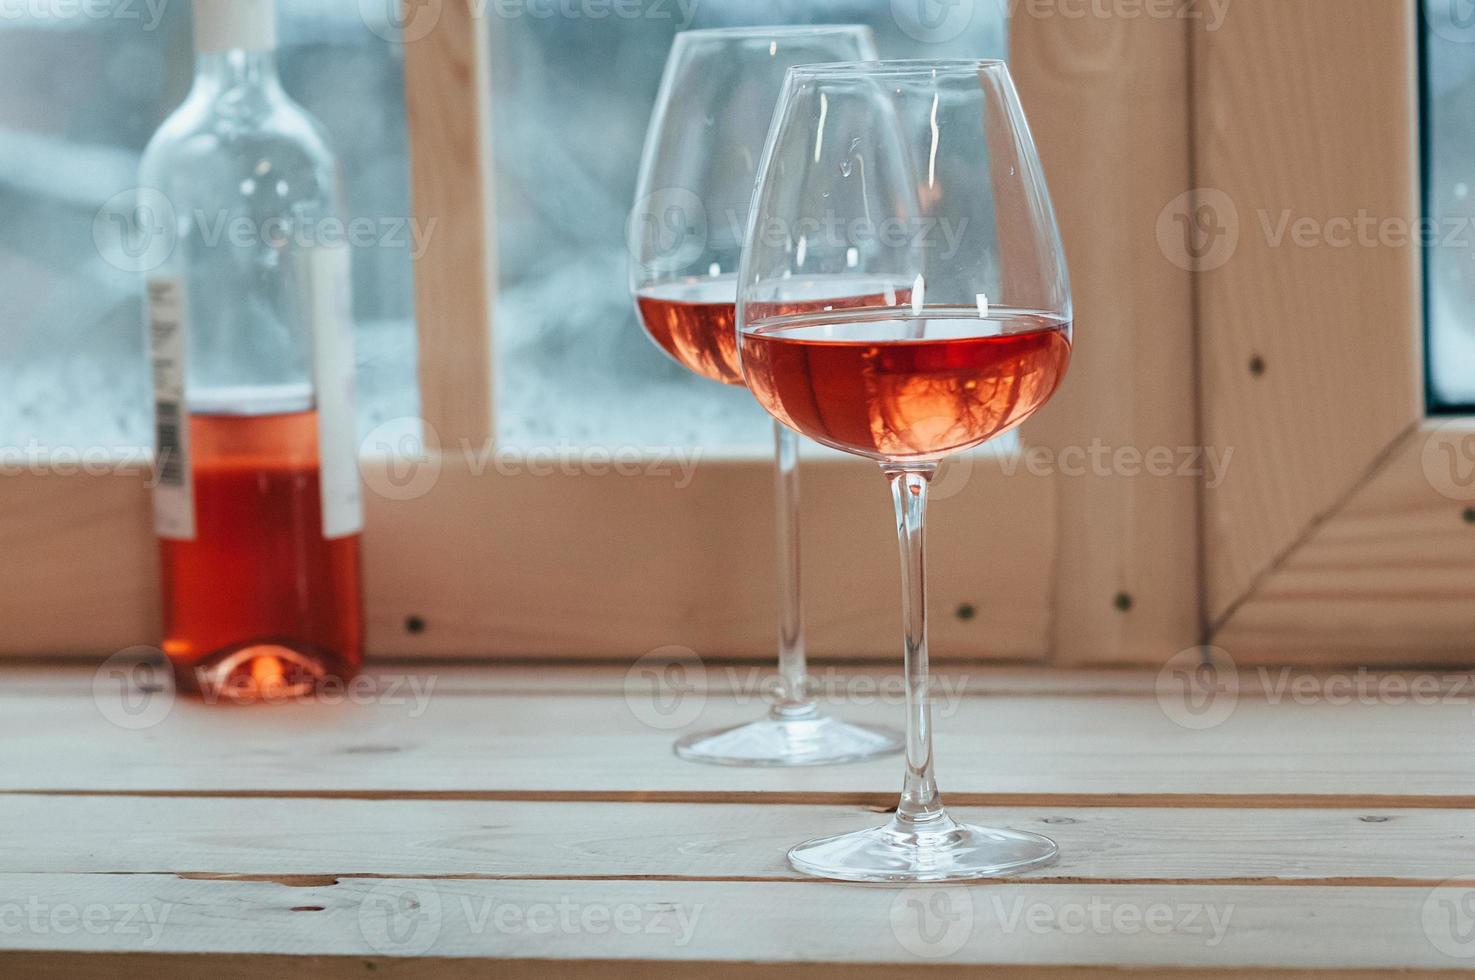 garrafa de vinho rosé e duas taças no parapeito da janela foto